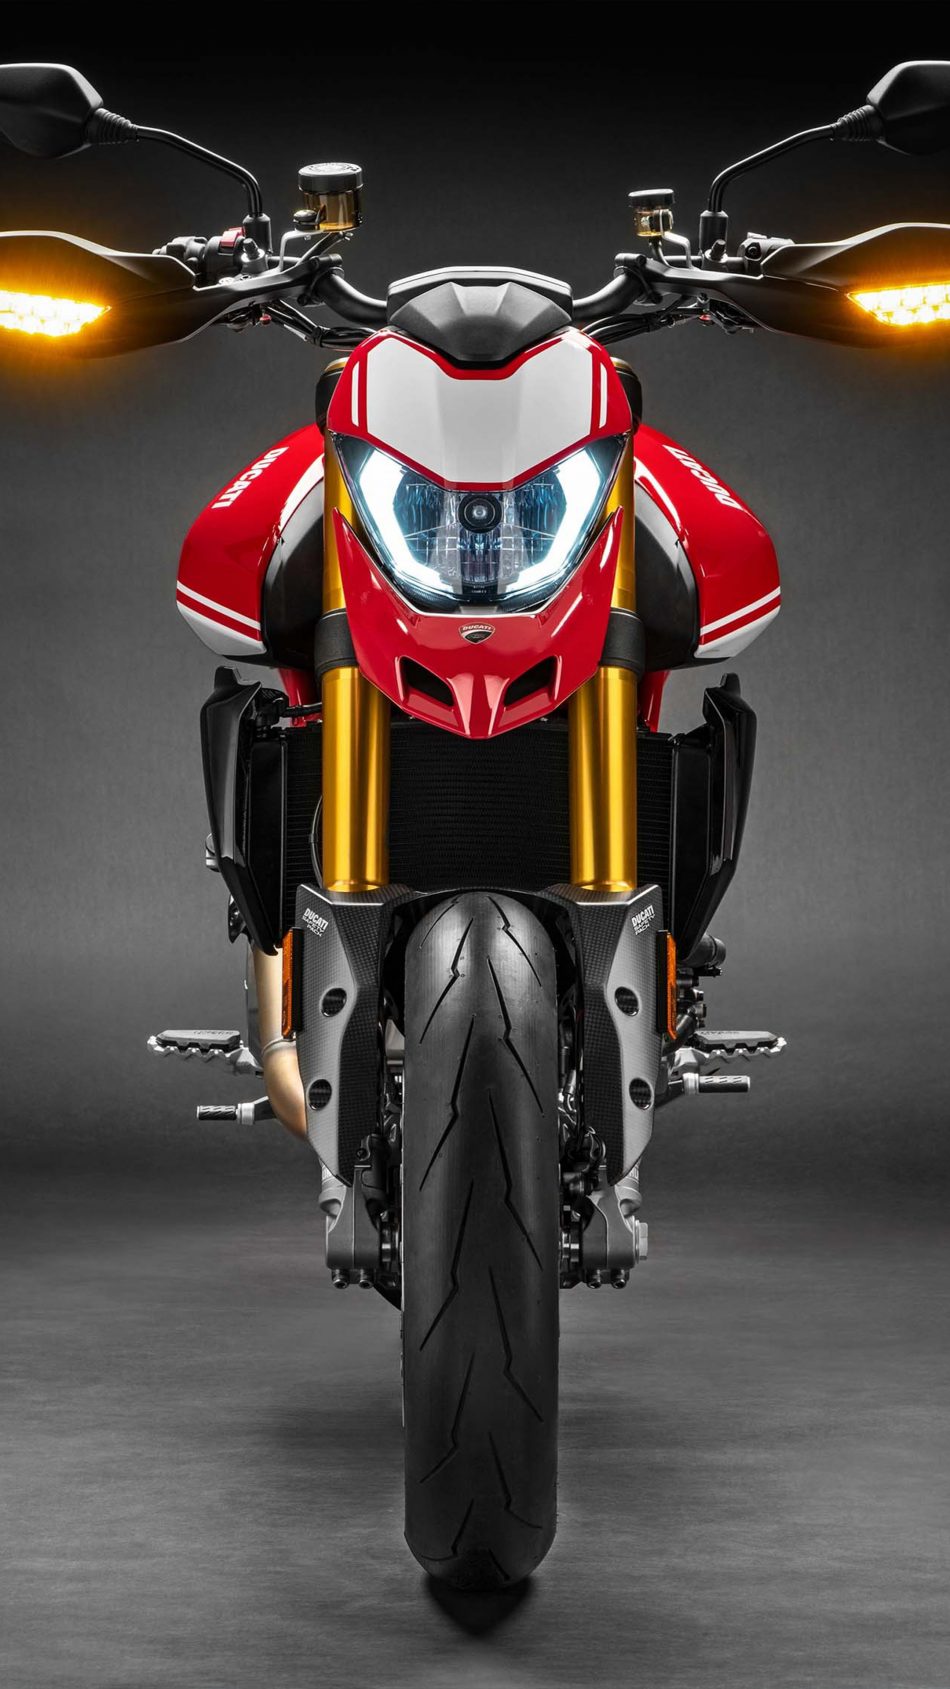 Ducati Hypermotard Sp Pure 4k Ultra HD Mobile